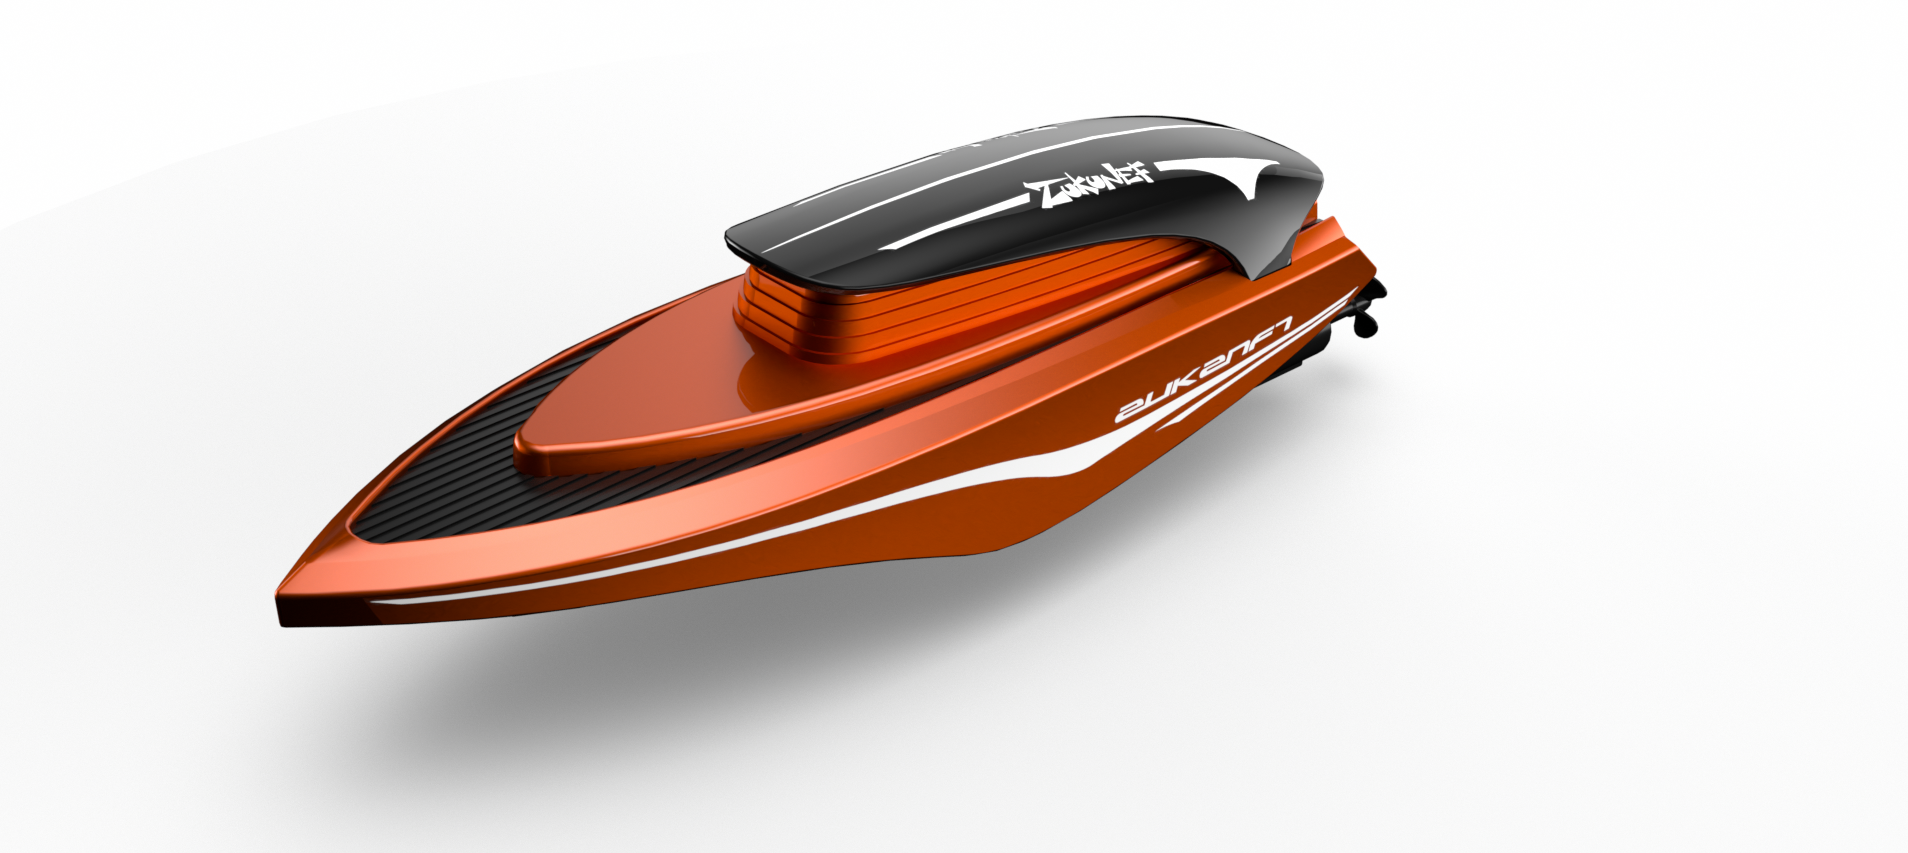 【杭州智信】2.4G电动遥控迷你高速快艇舰船模型竞技比赛器材-图1